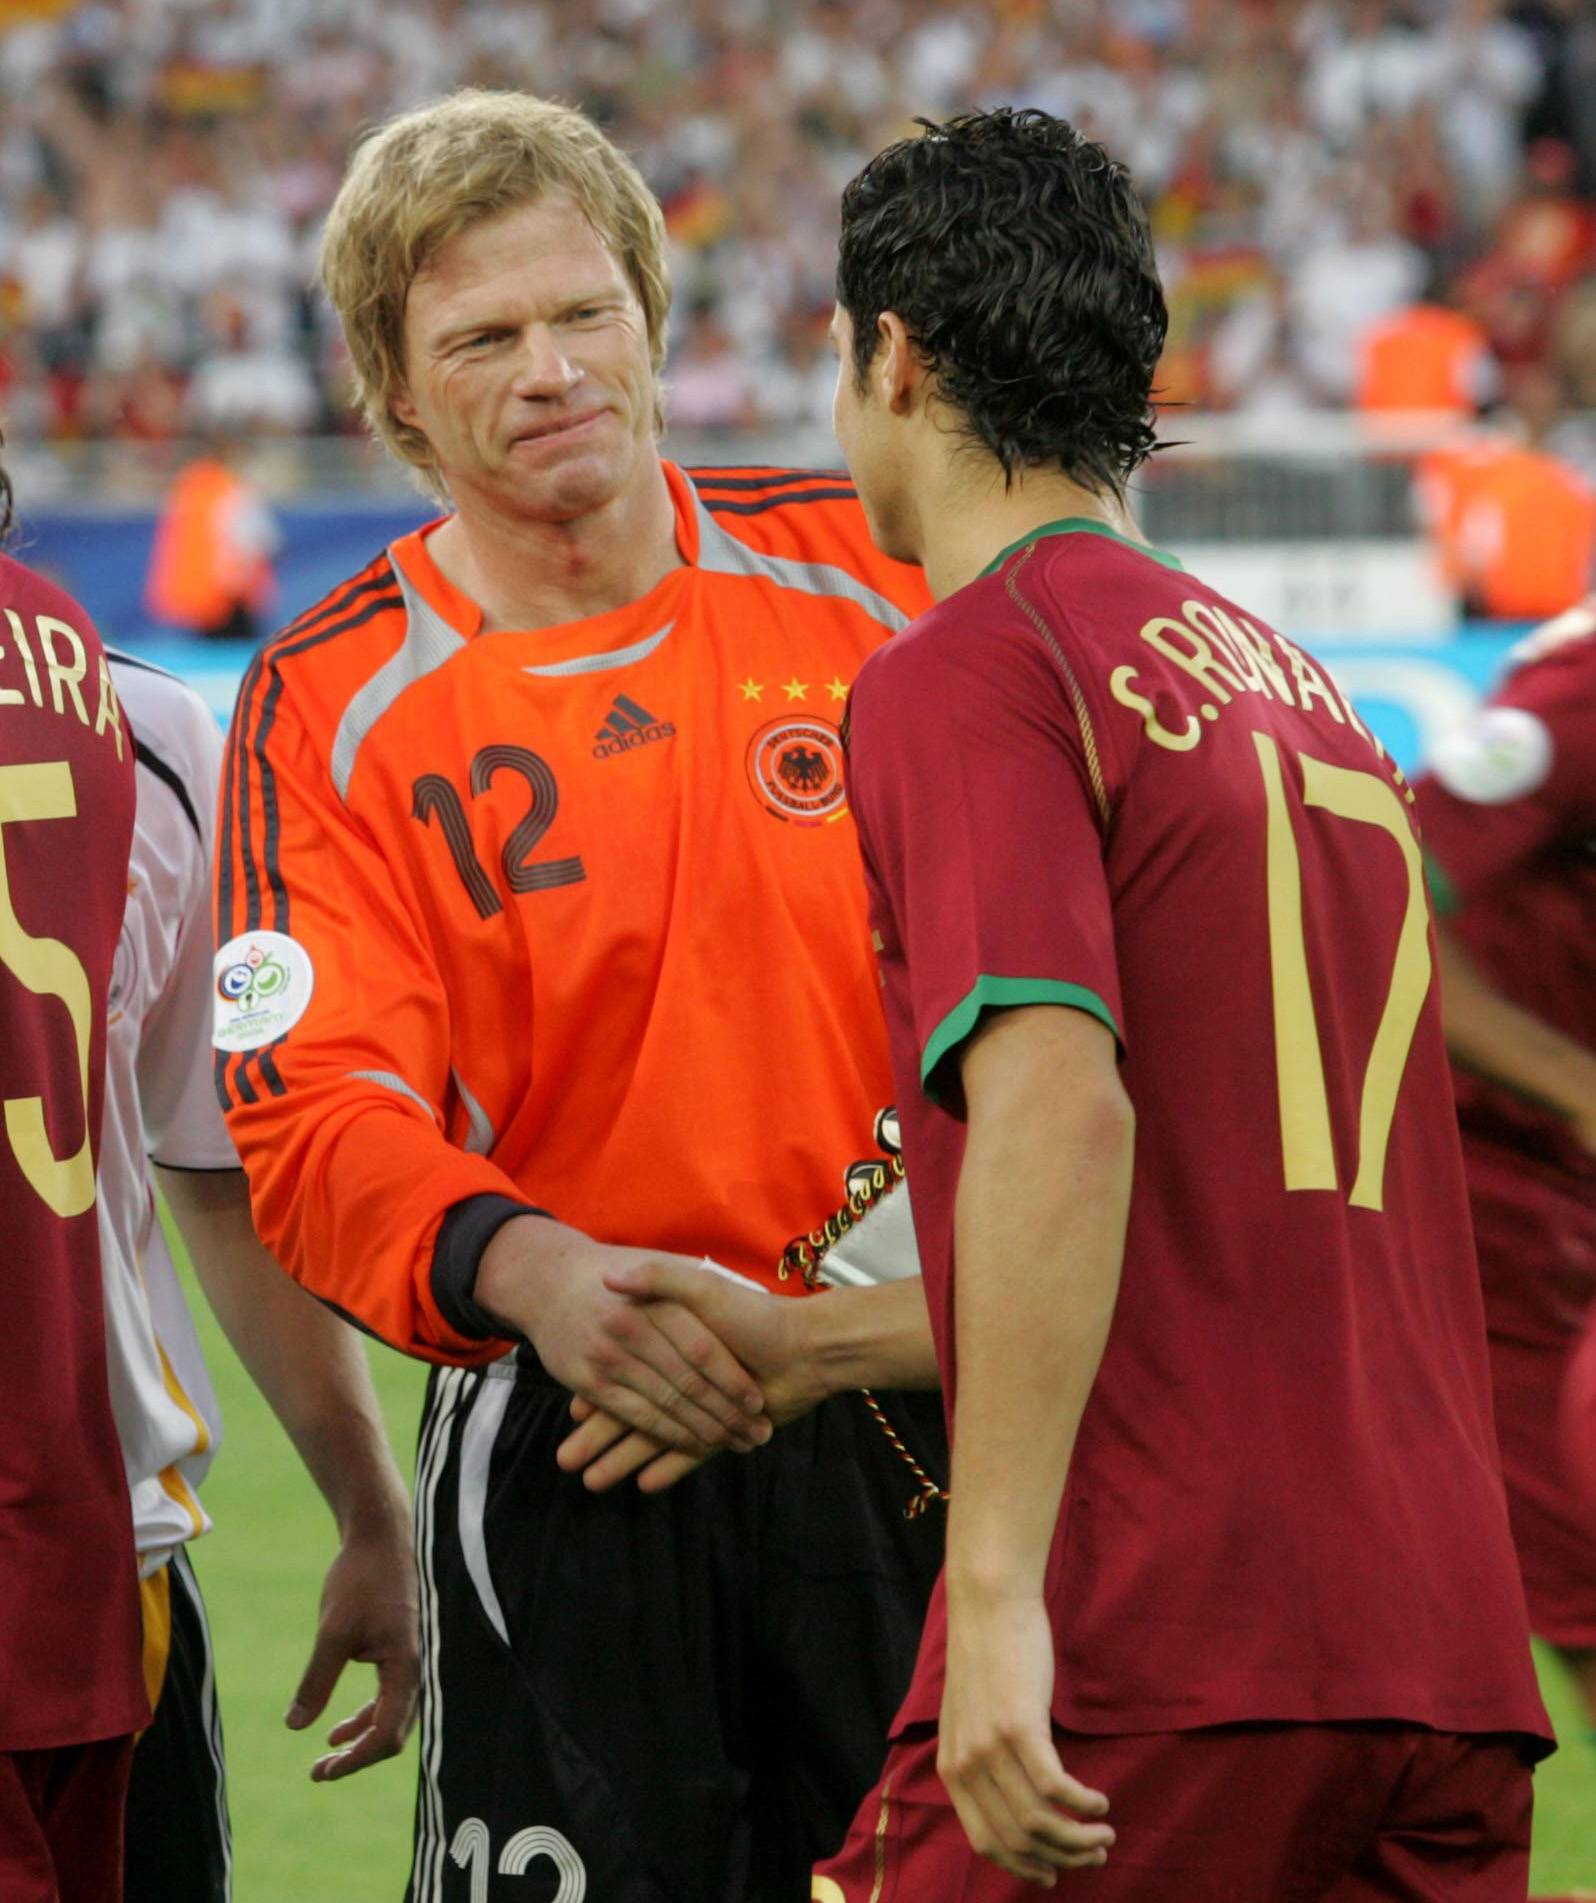 2006 begegneten sich Oliver Kahn (l.) und Cristiano Ronaldo auf dem Rasen. Bei der WM gewann Deutschland das Spiel um Platz drei gegen Portugal.